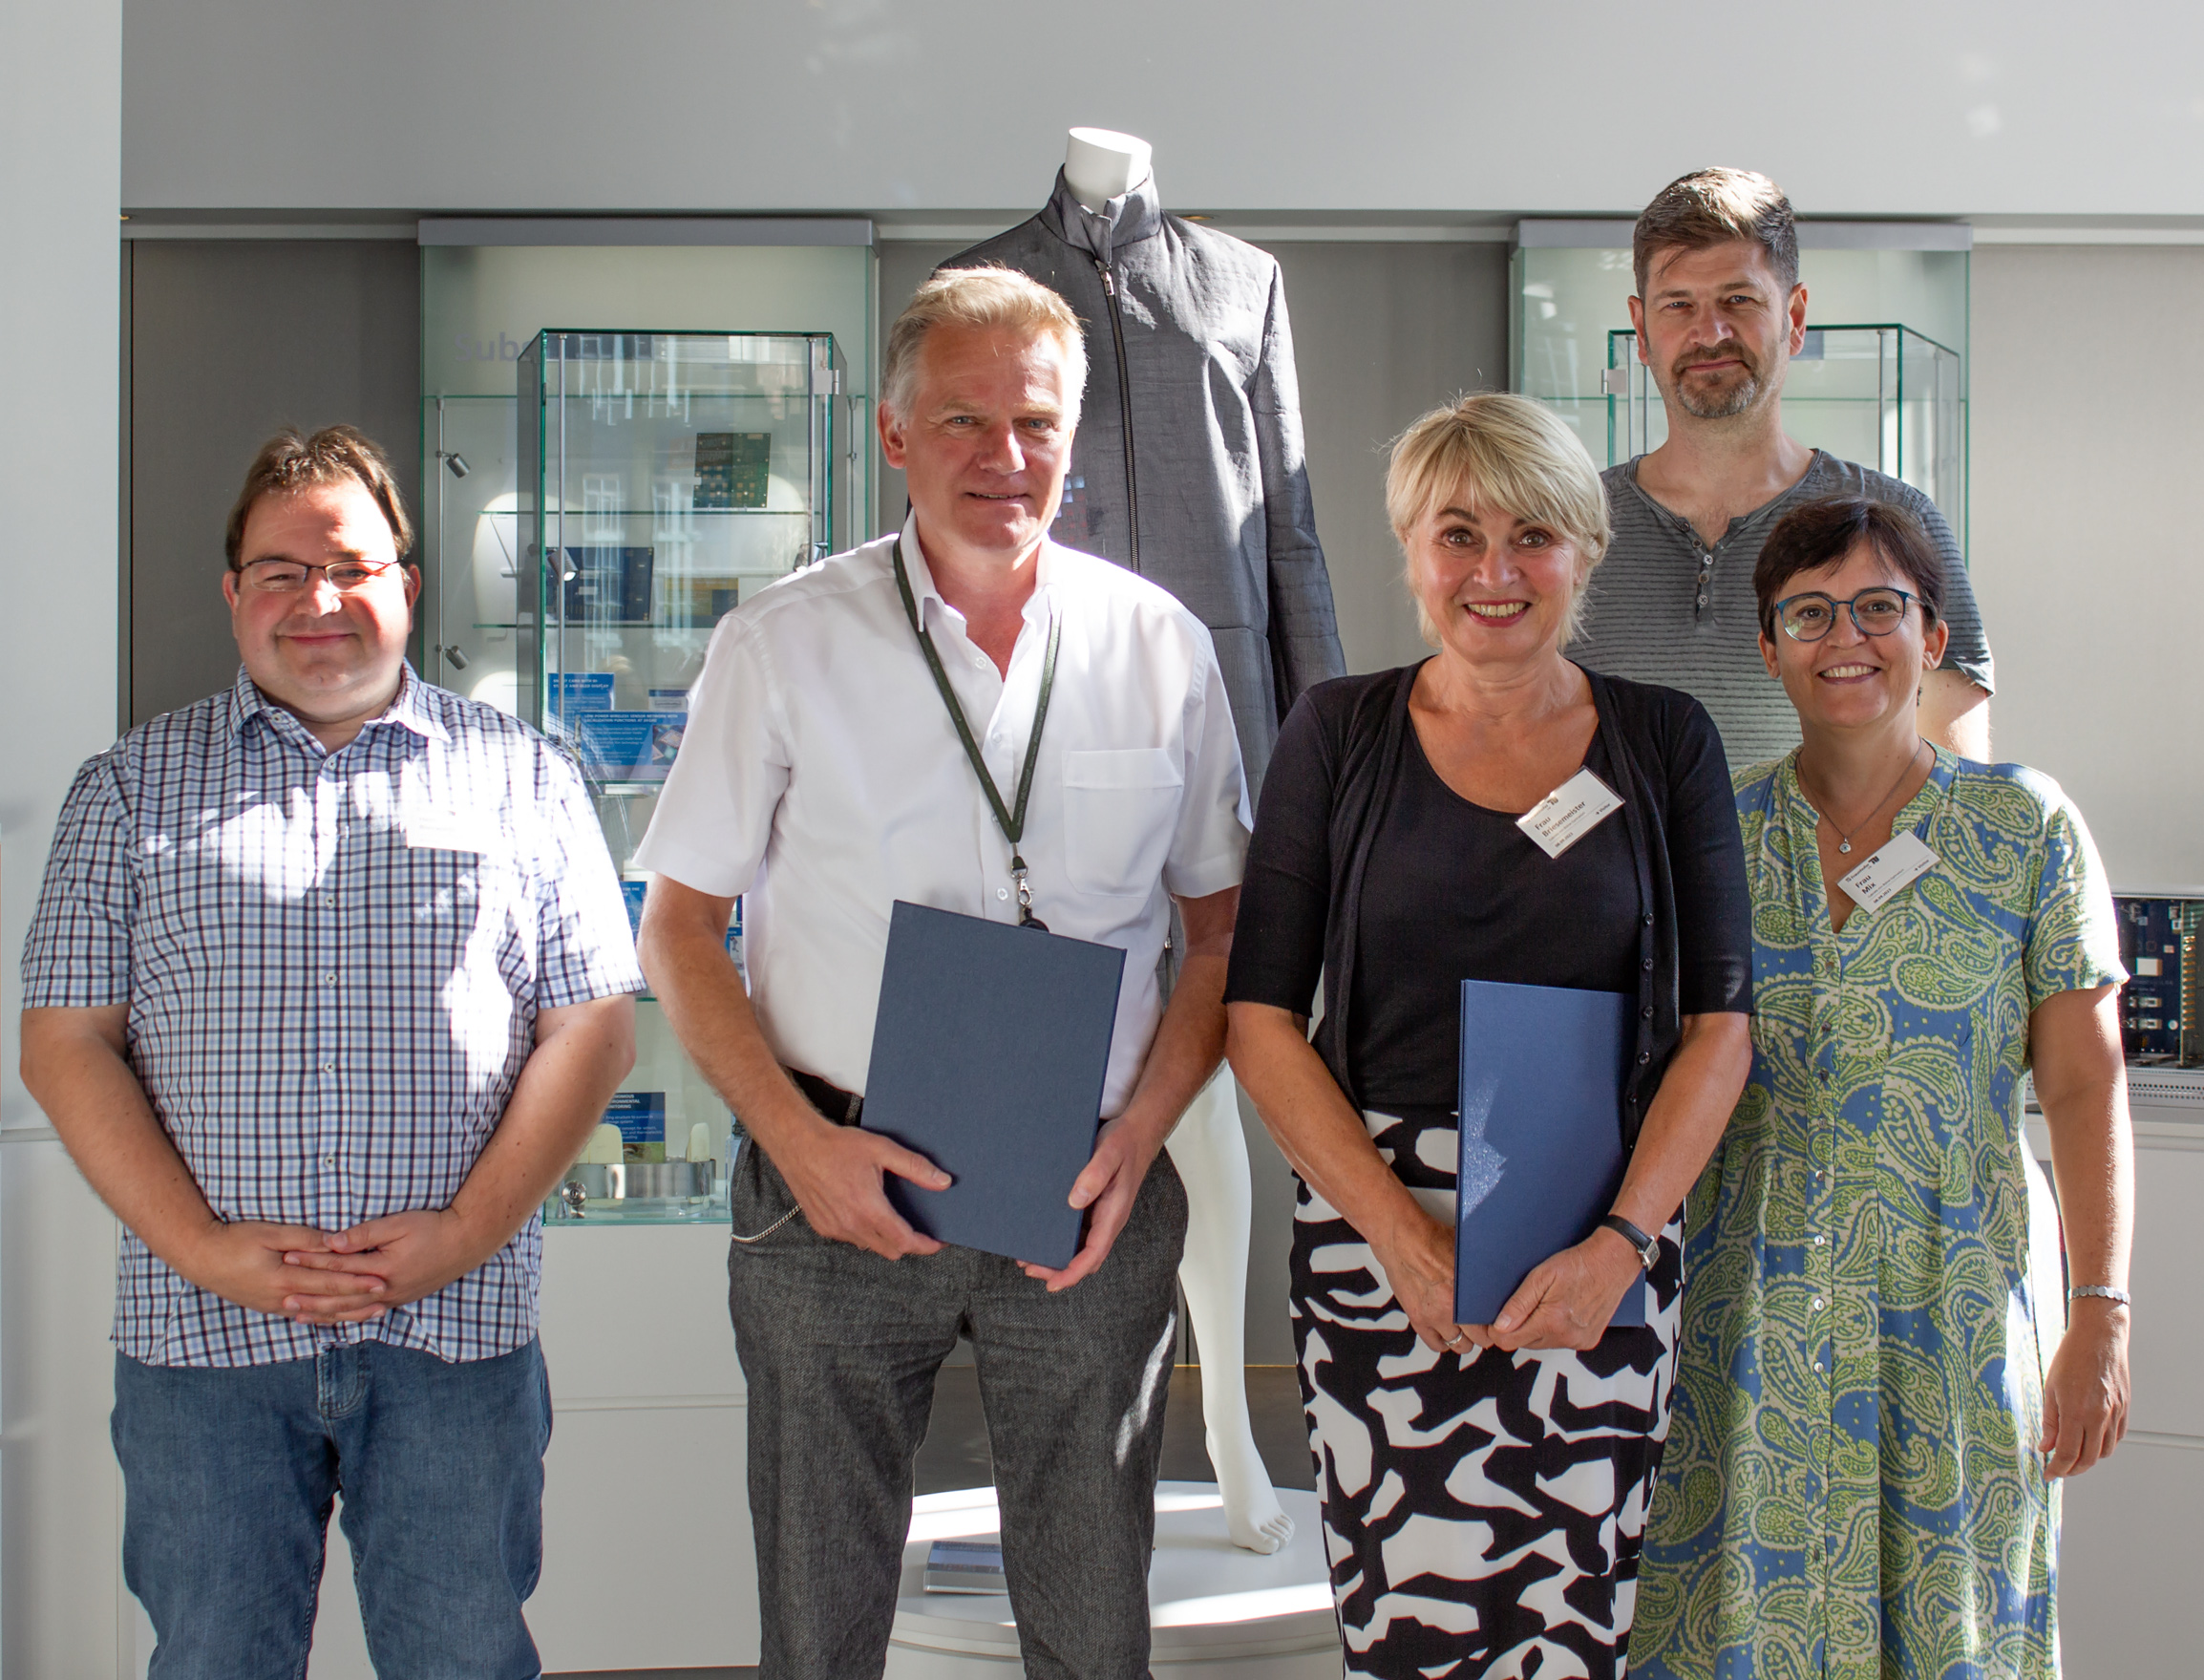 Von der Schule ins Labor – Fraunhofer IZM verlängert Kooperation mit MINT-freundlichem Gymnasium